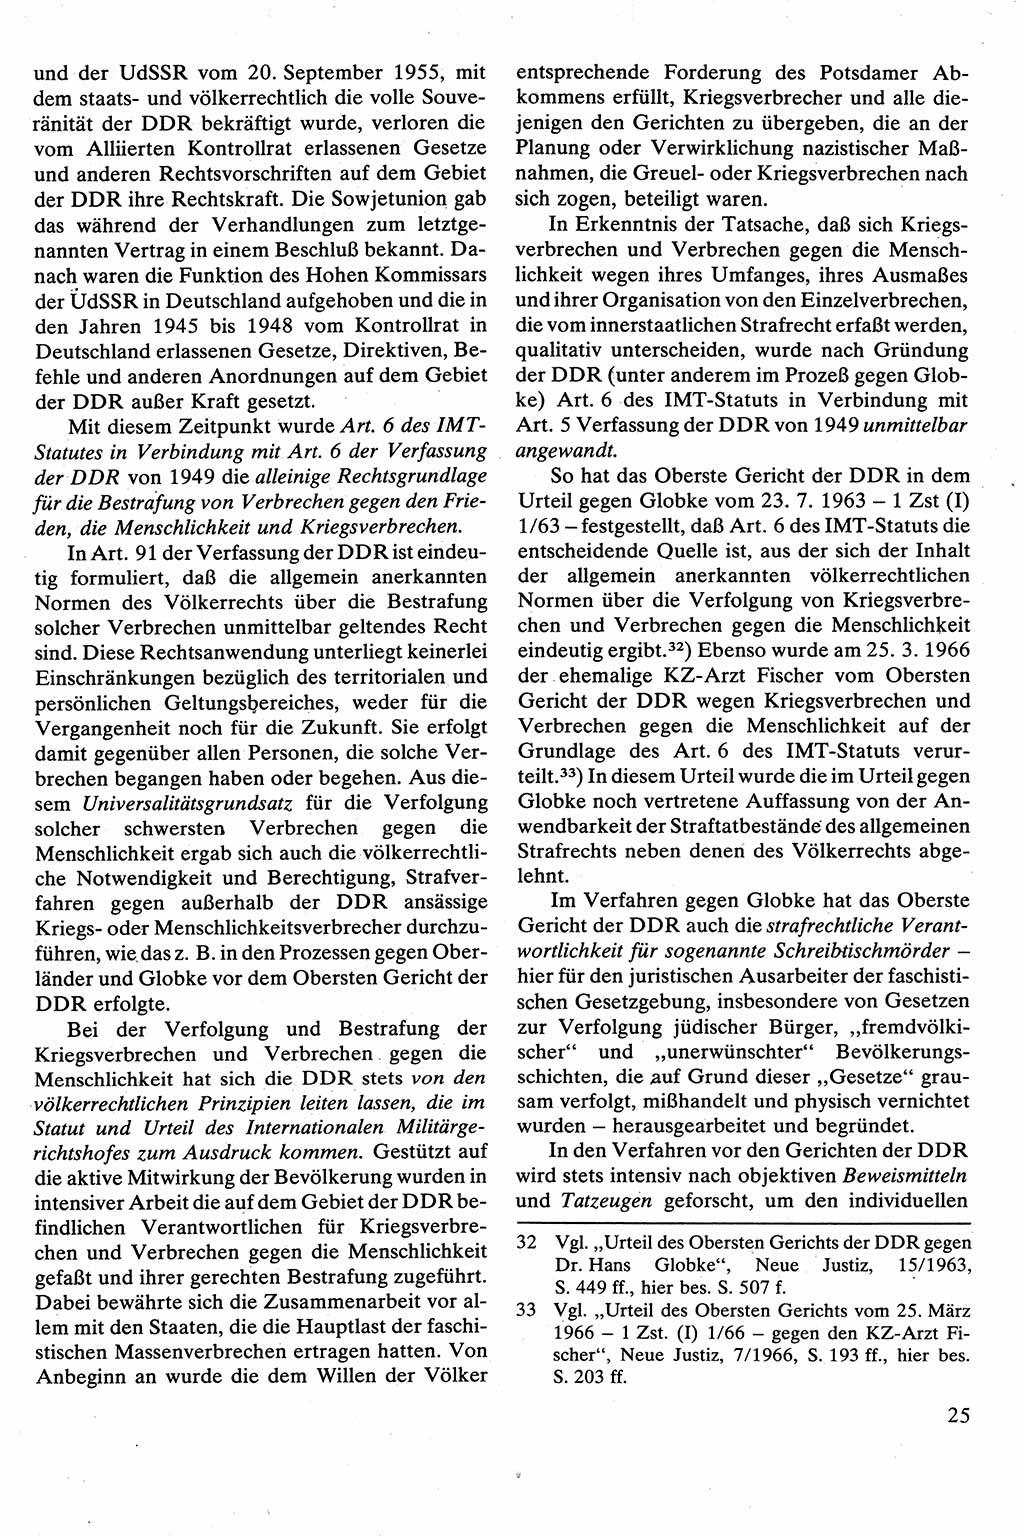 Strafrecht [Deutsche Demokratische Republik (DDR)], Besonderer Teil, Lehrbuch 1981, Seite 25 (Strafr. DDR BT Lb. 1981, S. 25)